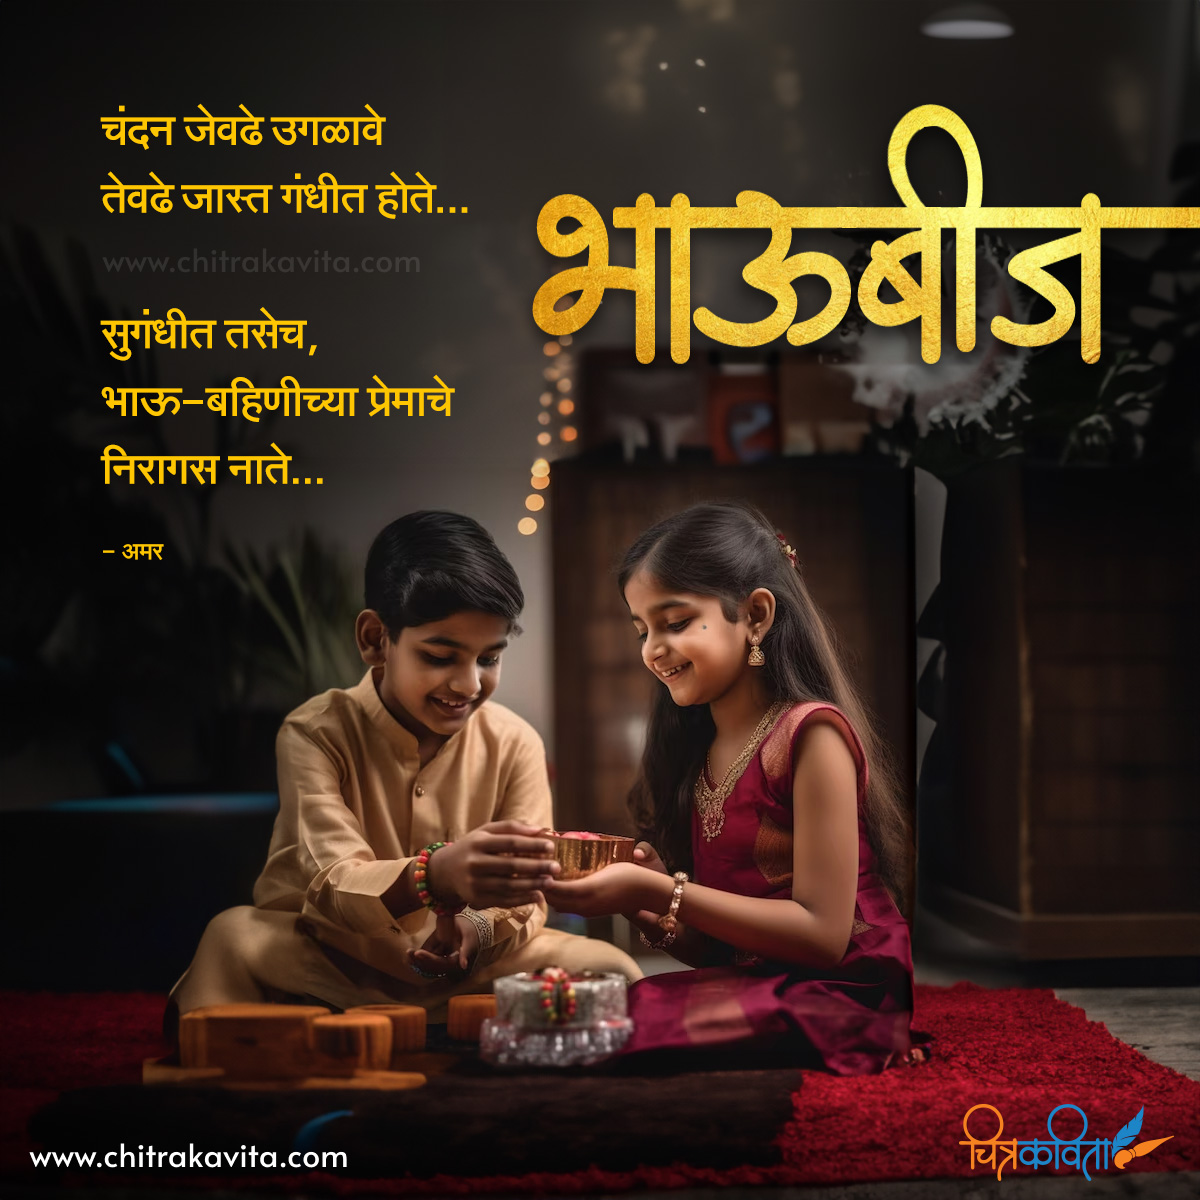 Marathi Diwali Greeting Bhavbij | Chitrakavita.com